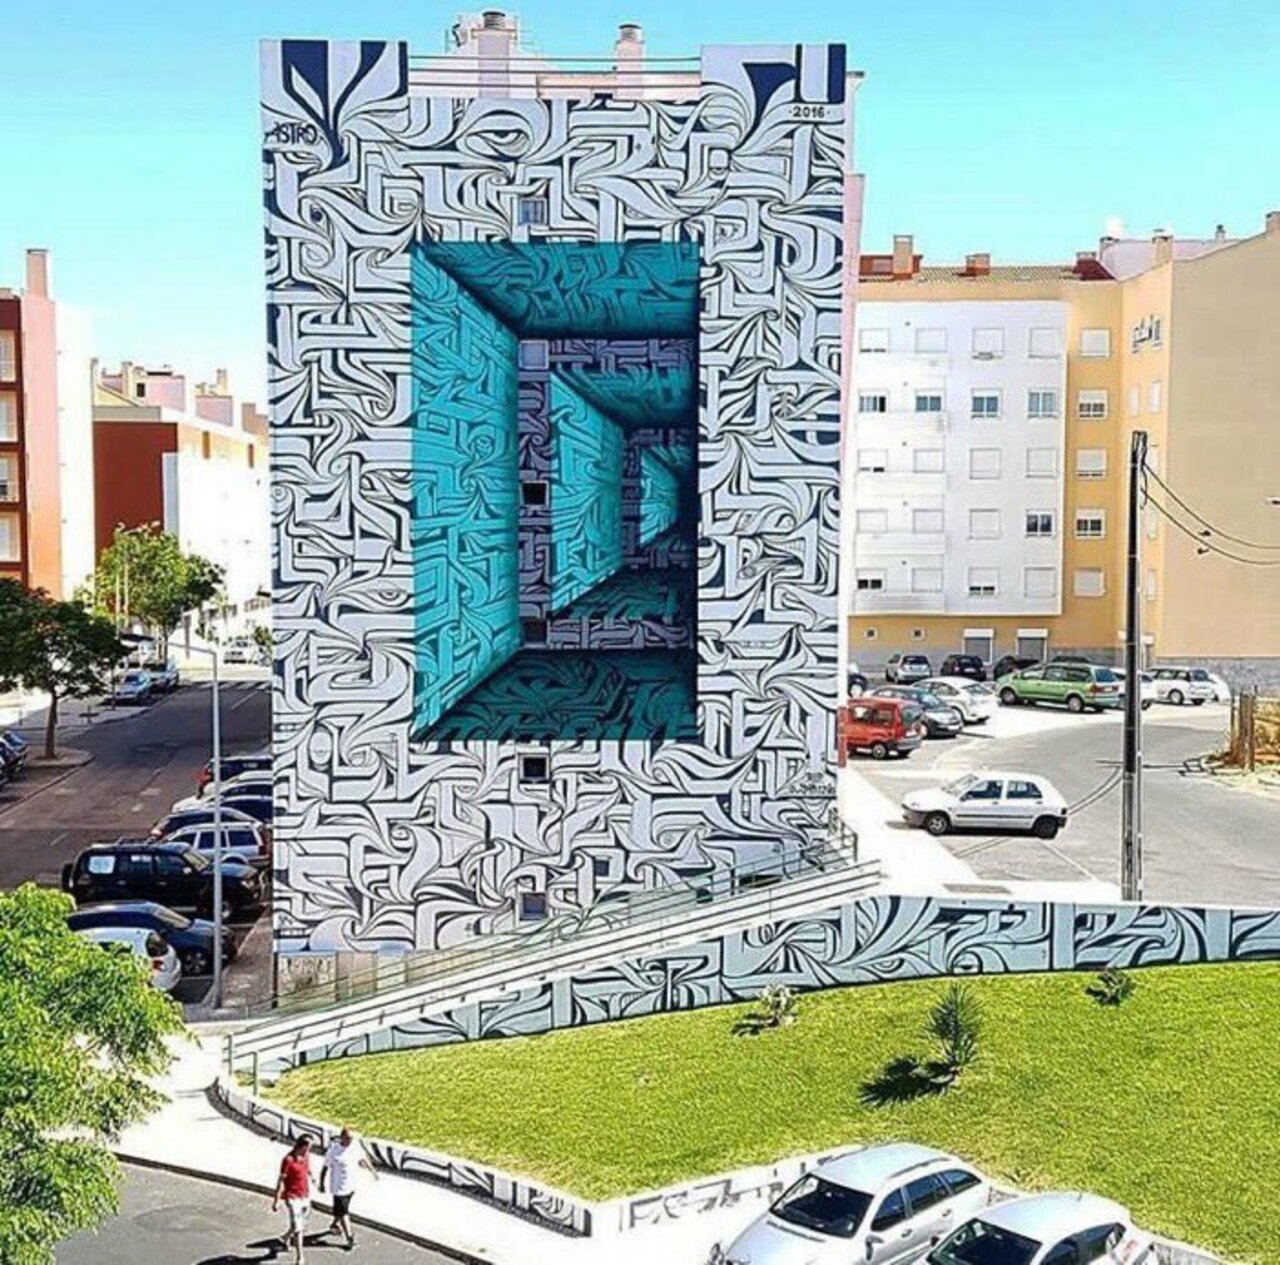 #mural By AstroOdvCbs #Lisbon #Portugal #art #graffiti #streetart #urbanart https://t.co/J5q6w2Gtl4